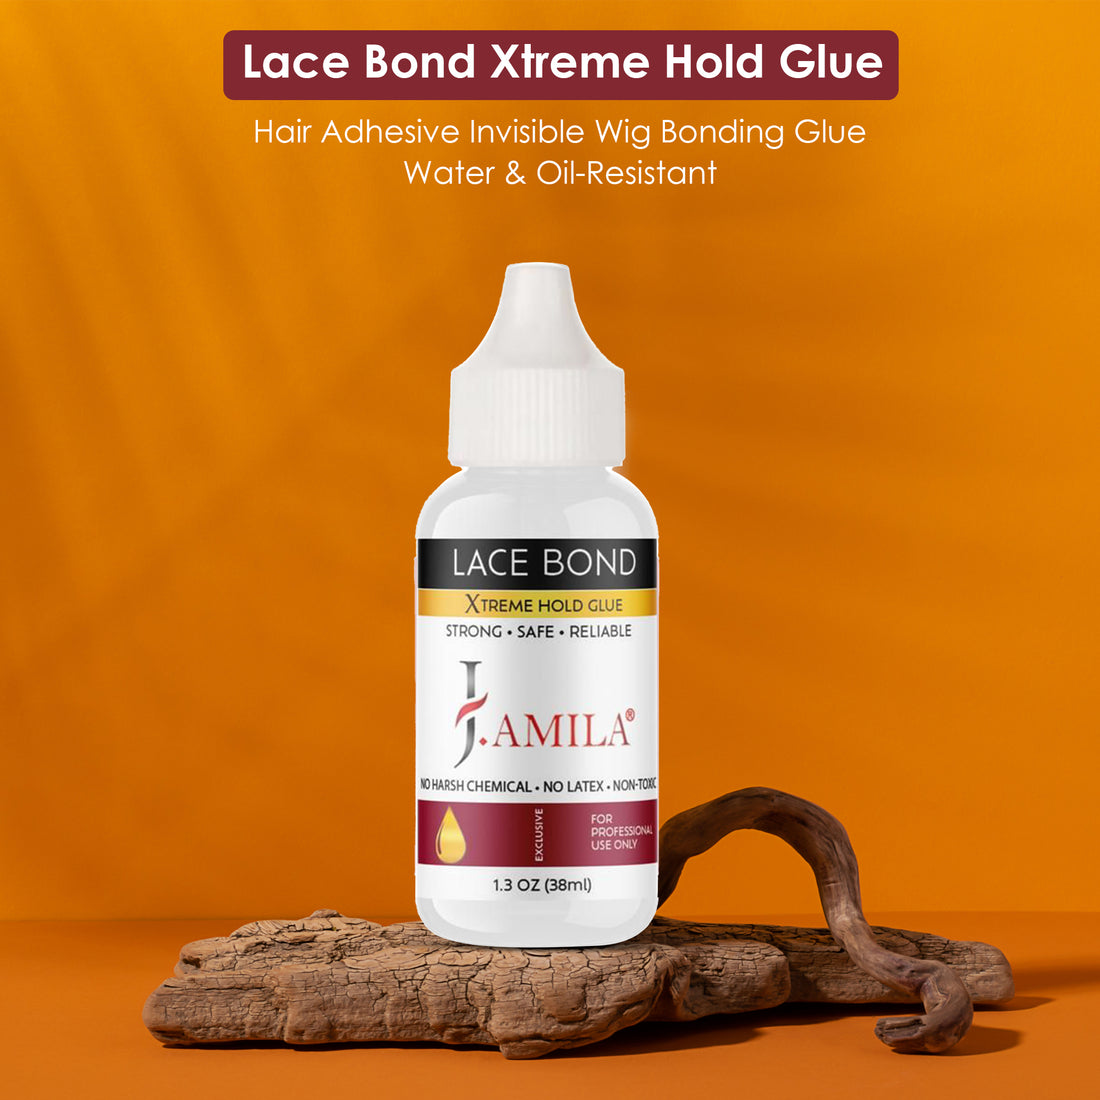 J. AMILA® Lace Bond Xtreme Hold Glue (1.3oz)